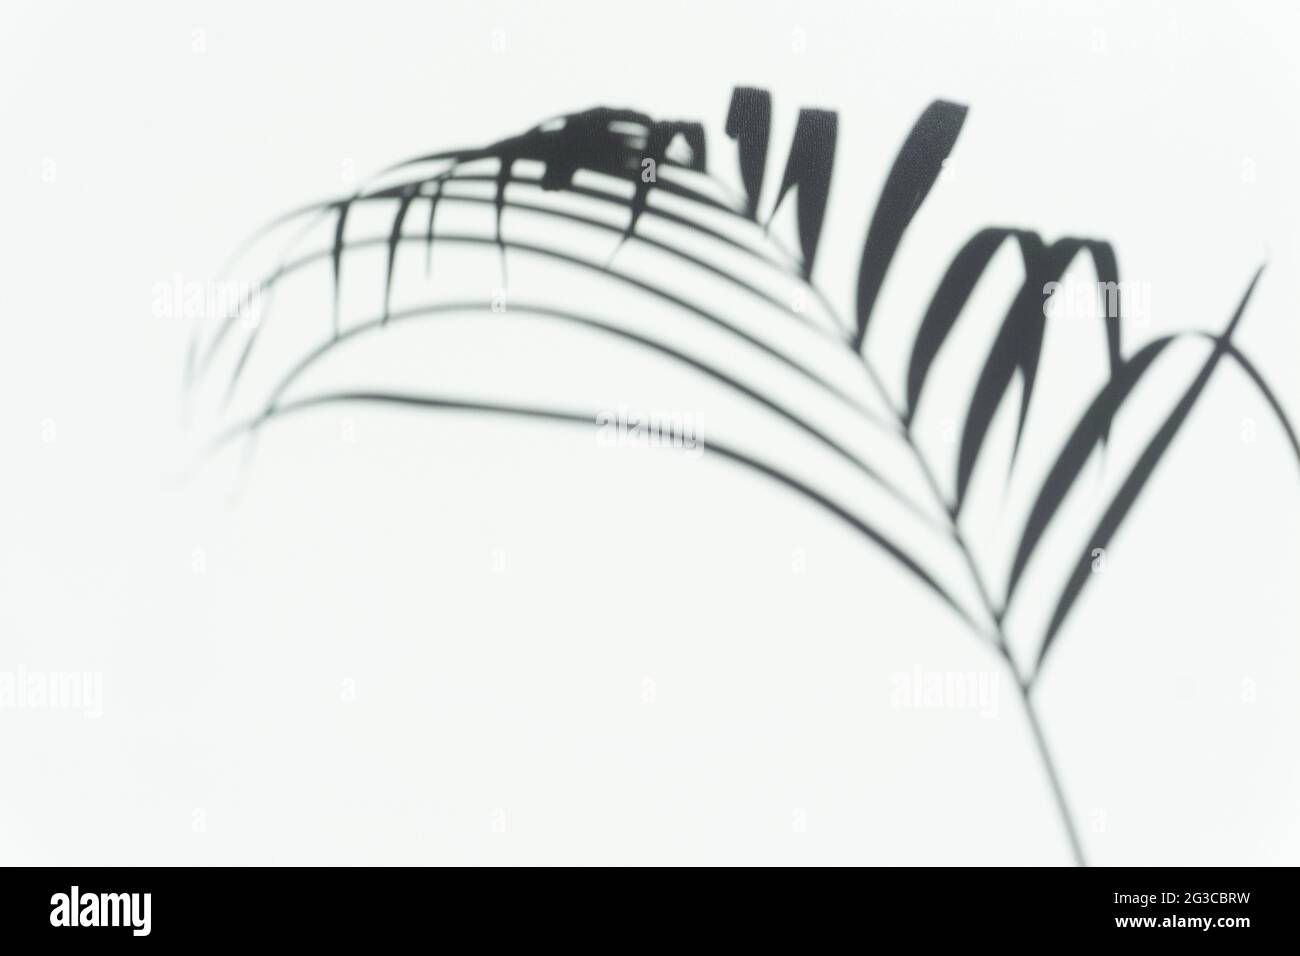 Schatten Handfläche Overlay Hintergrund. Verschwommener Schatten eines tropischen Astes einer Palme an einer weißen hellen Wand an einem sonnigen Tag. Hochwertige Fotos Stockfoto